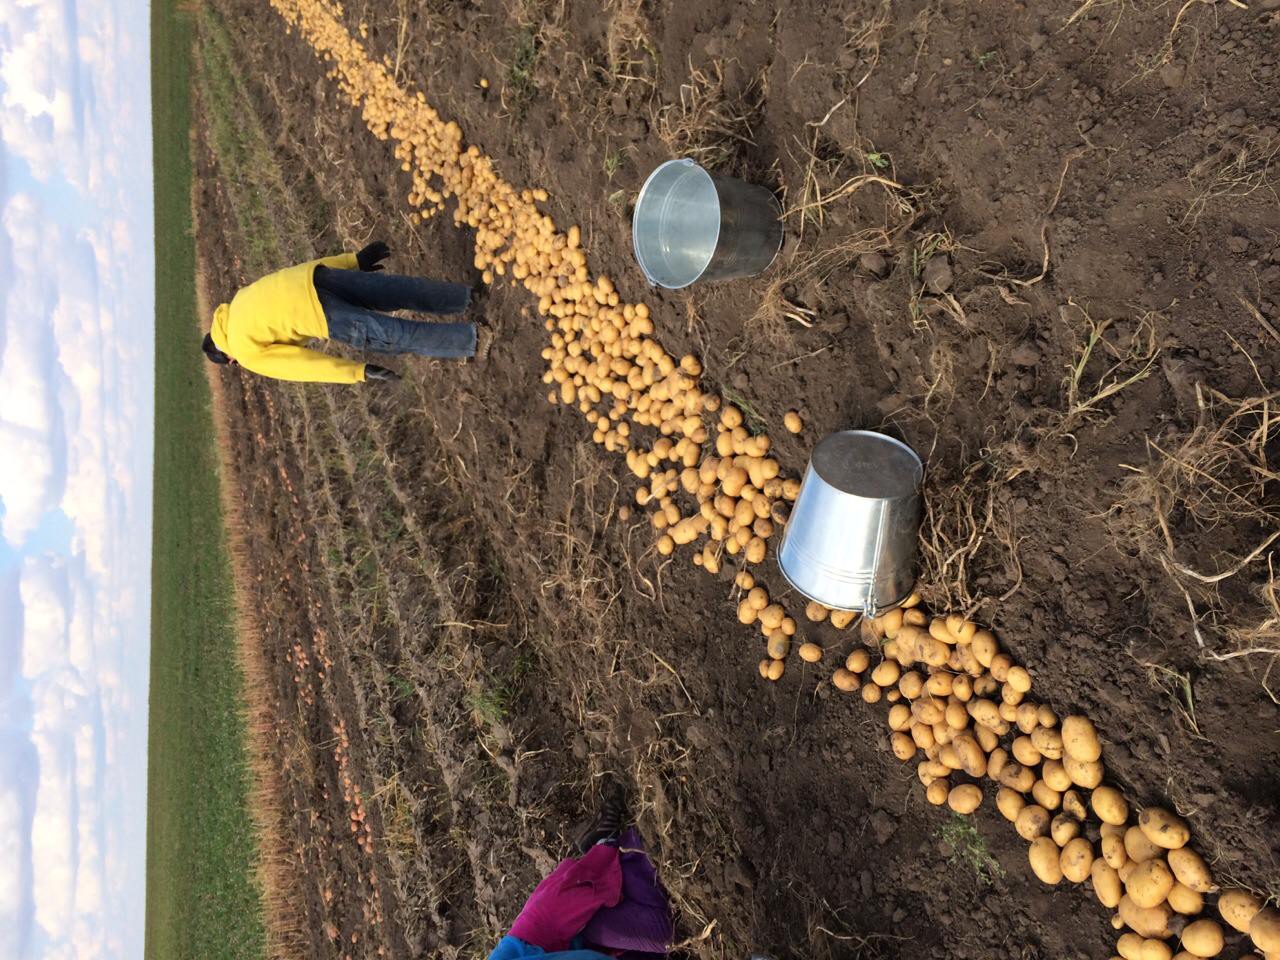 Особенности посадки картофеля по голландской технологии